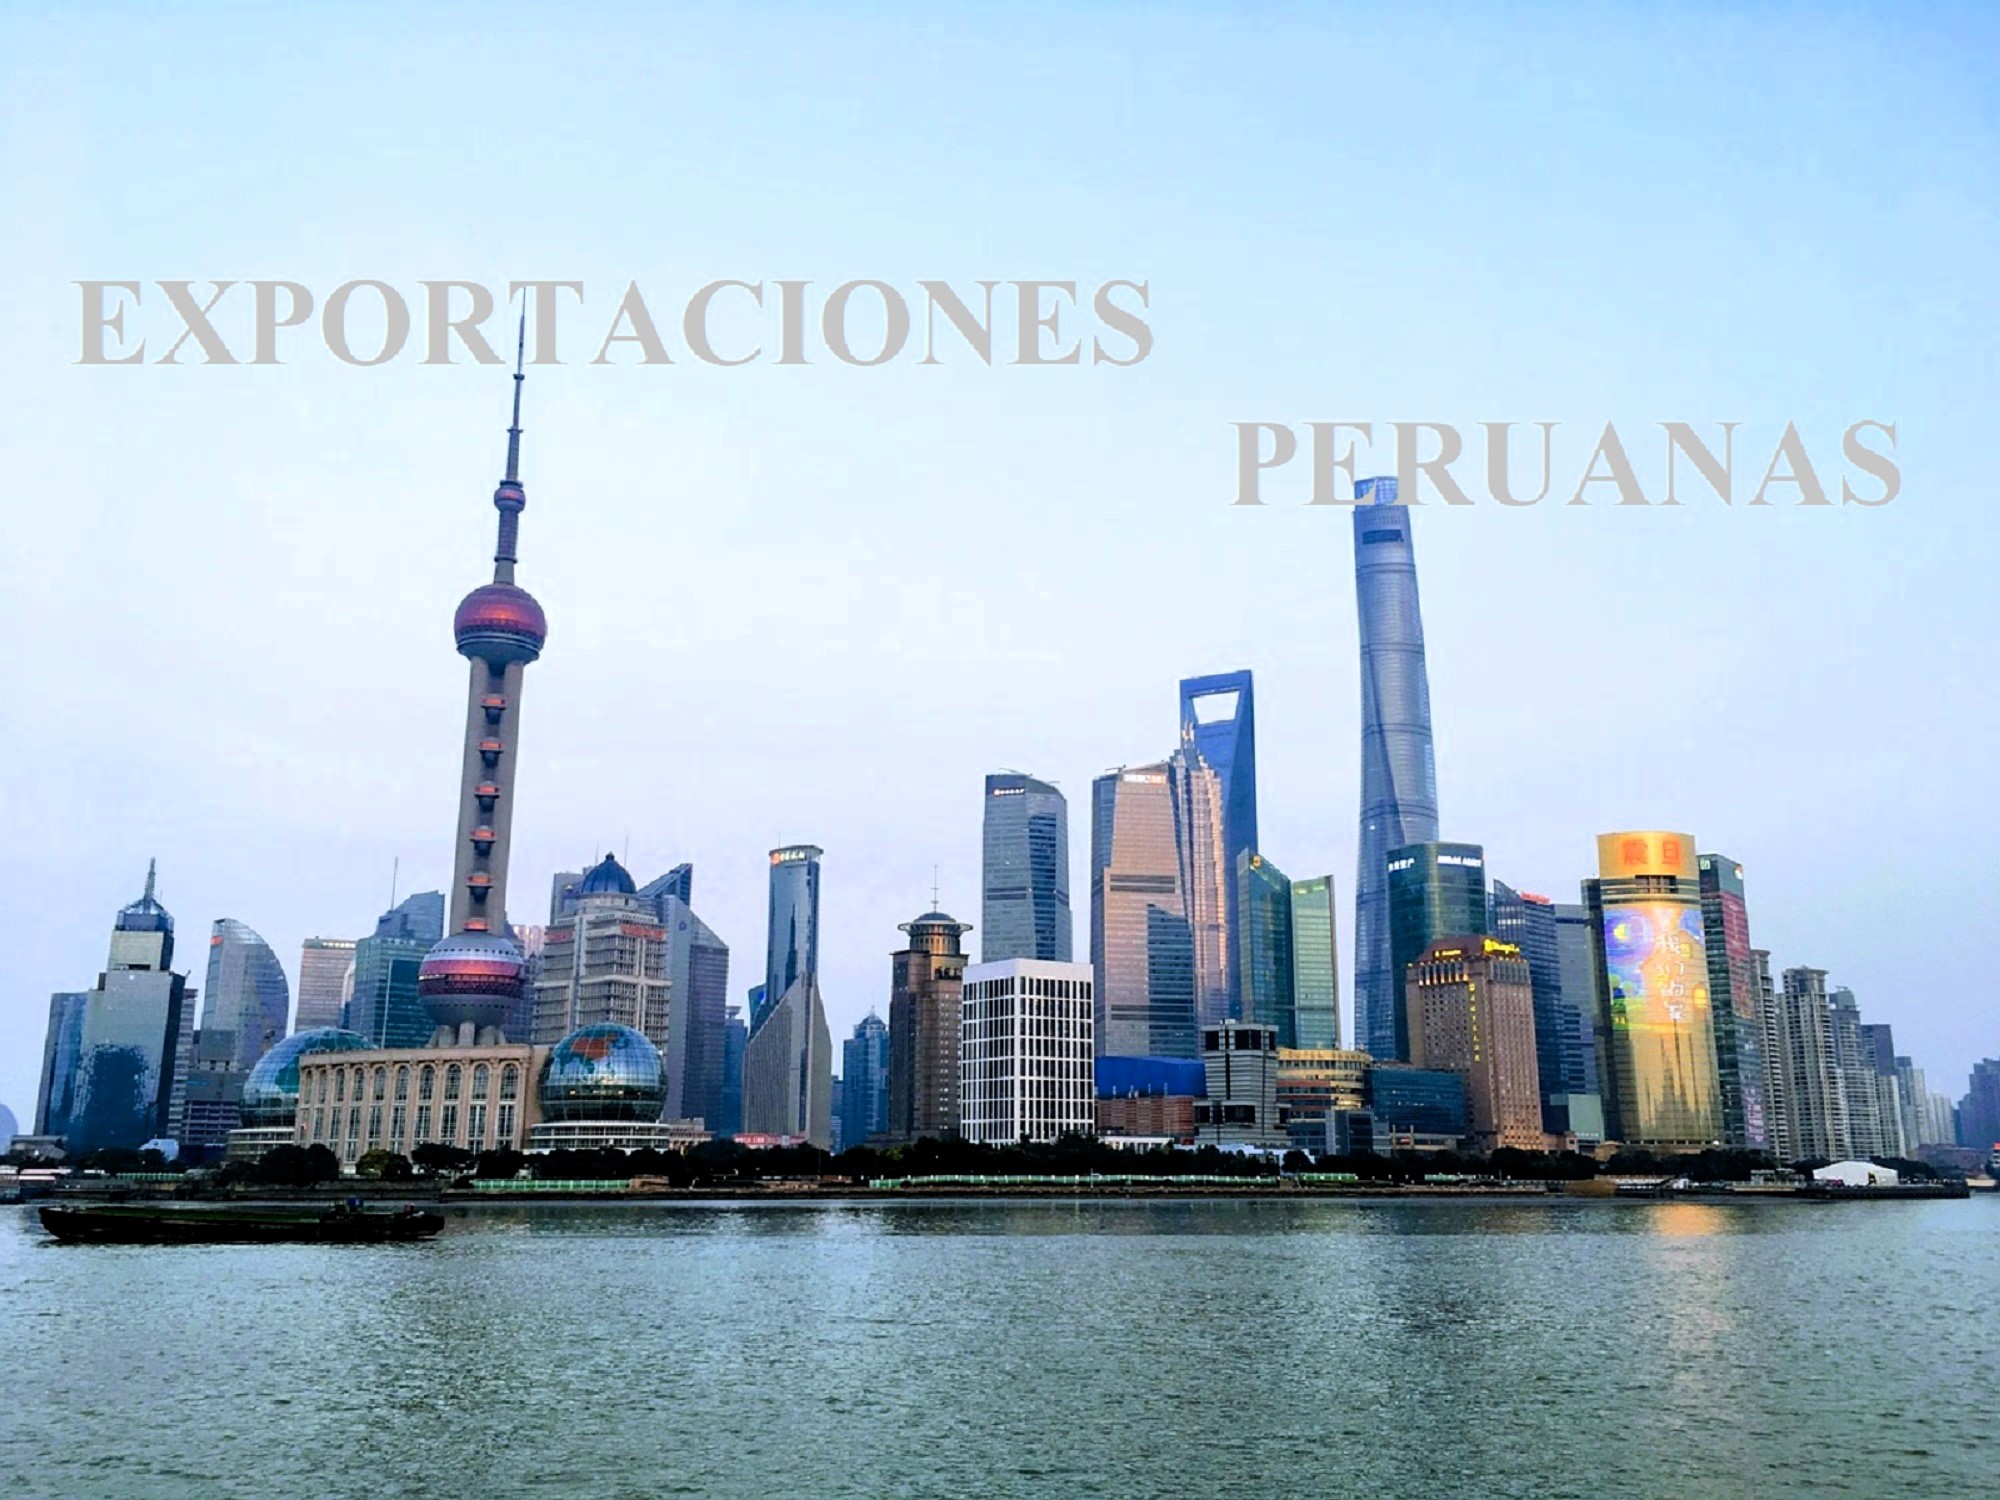 95.2% del destino de exportaciones peruanas llegan a cinco naciones: China, Corea del Sur, Japón, India y EAU, generando 1 millón 100 mil empleos.